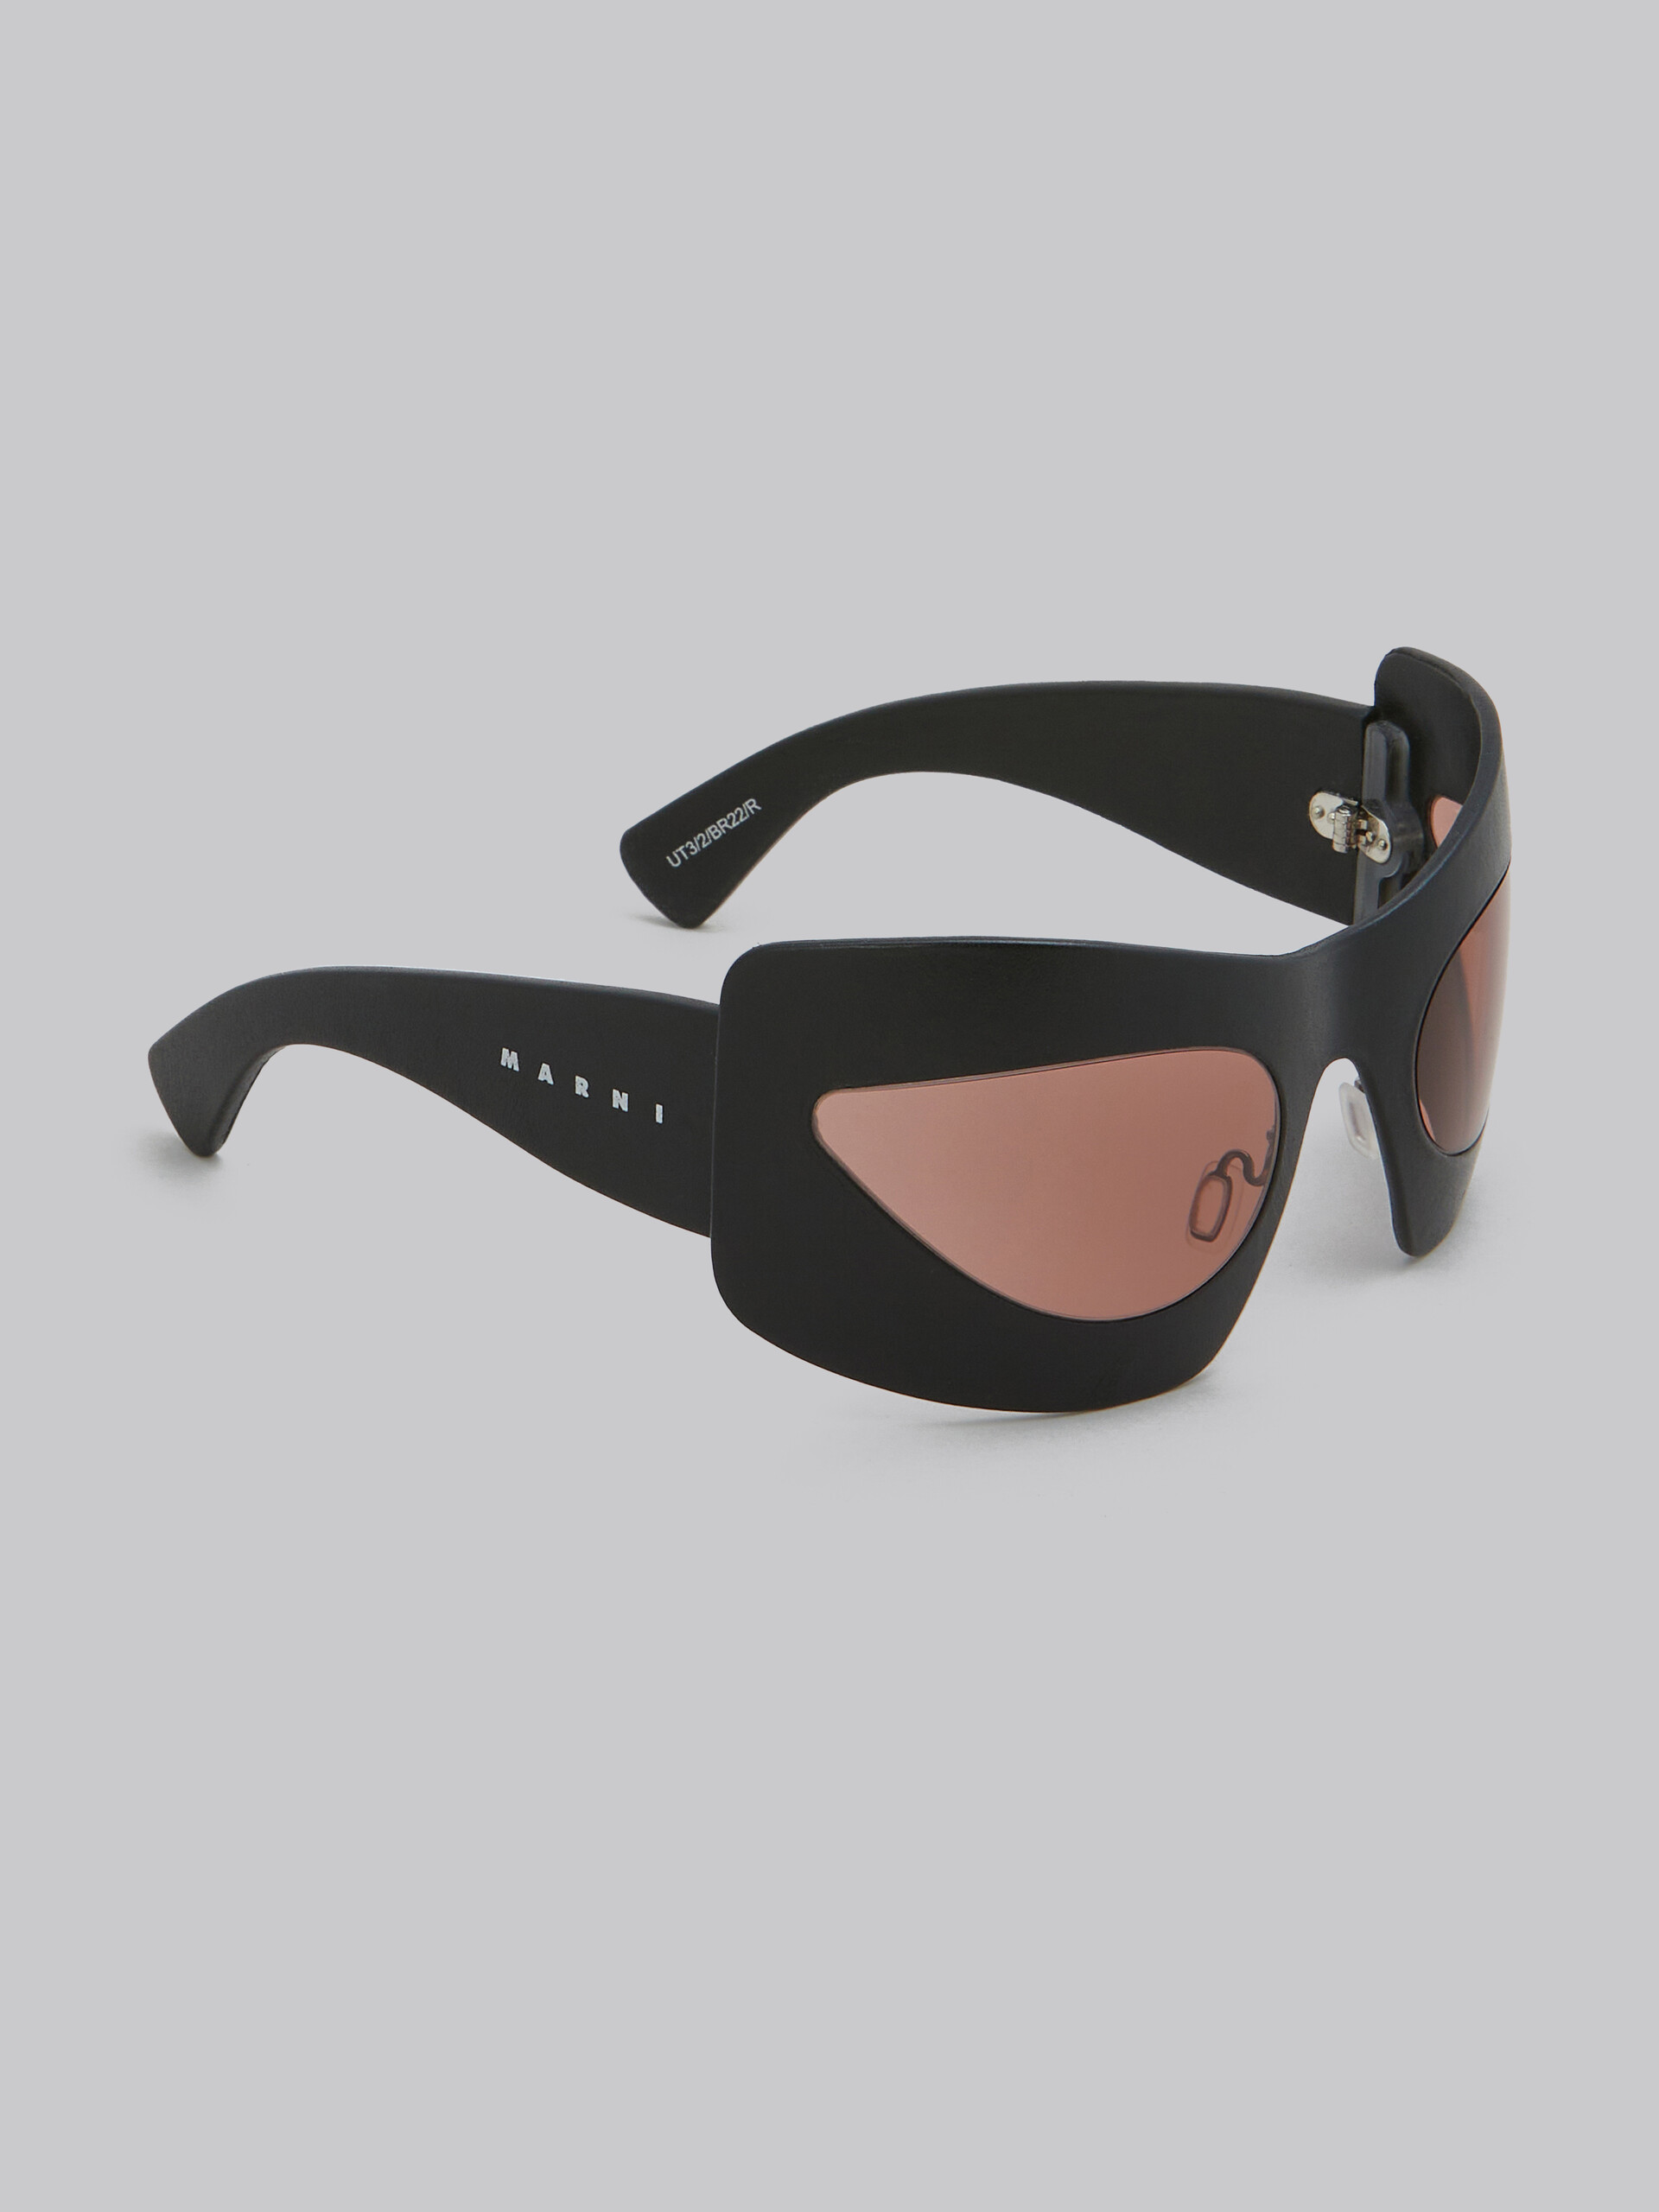 Karakum black leather sunglasses - Optical - Image 3